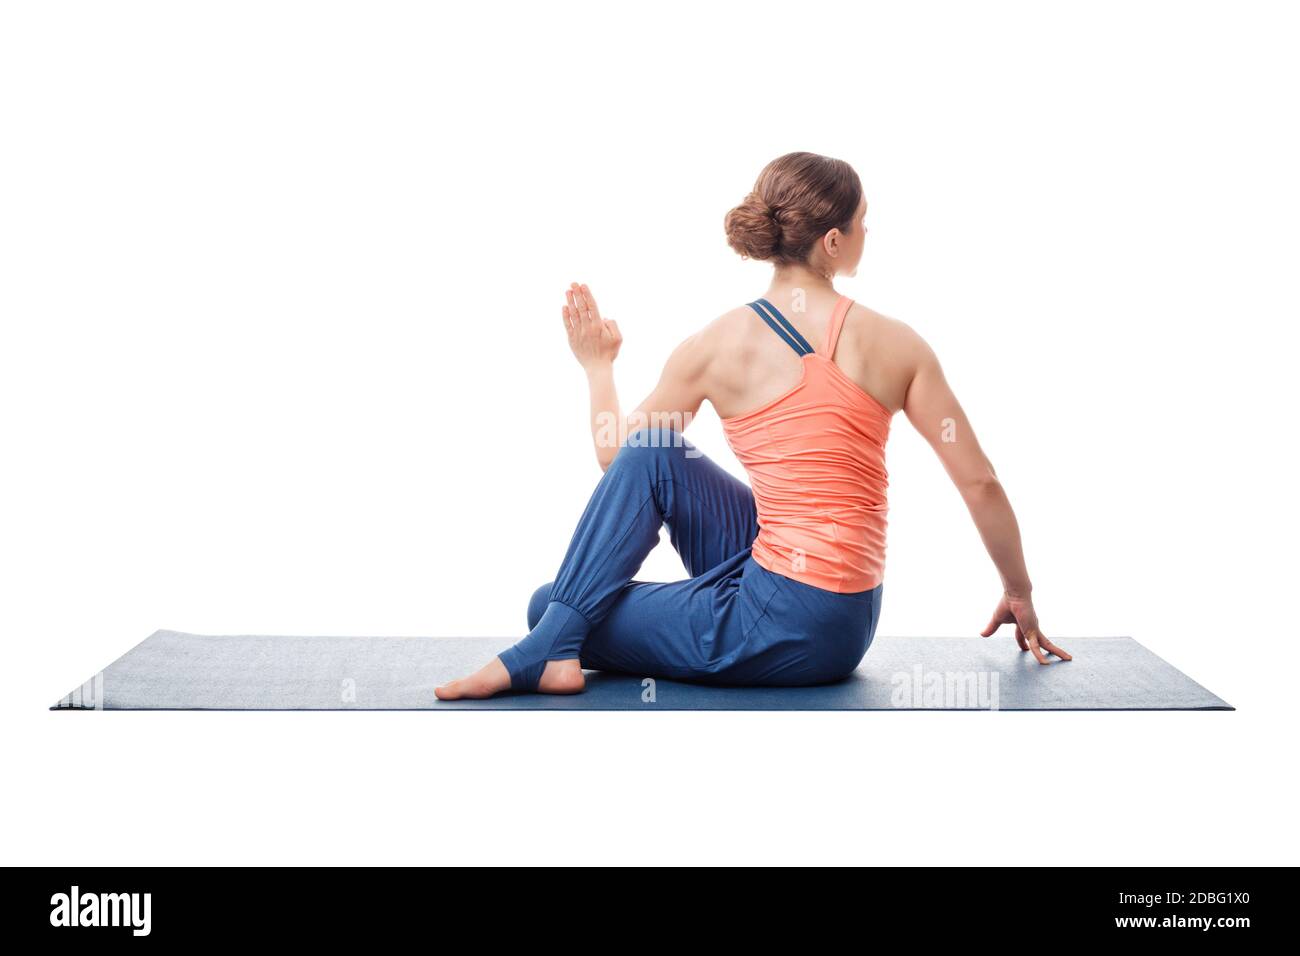 Belle tenue sportive yogini femme pratique yoga asana ardha matsyendrasana - demi-tour spinal pose isolée sur fond blanc Banque D'Images